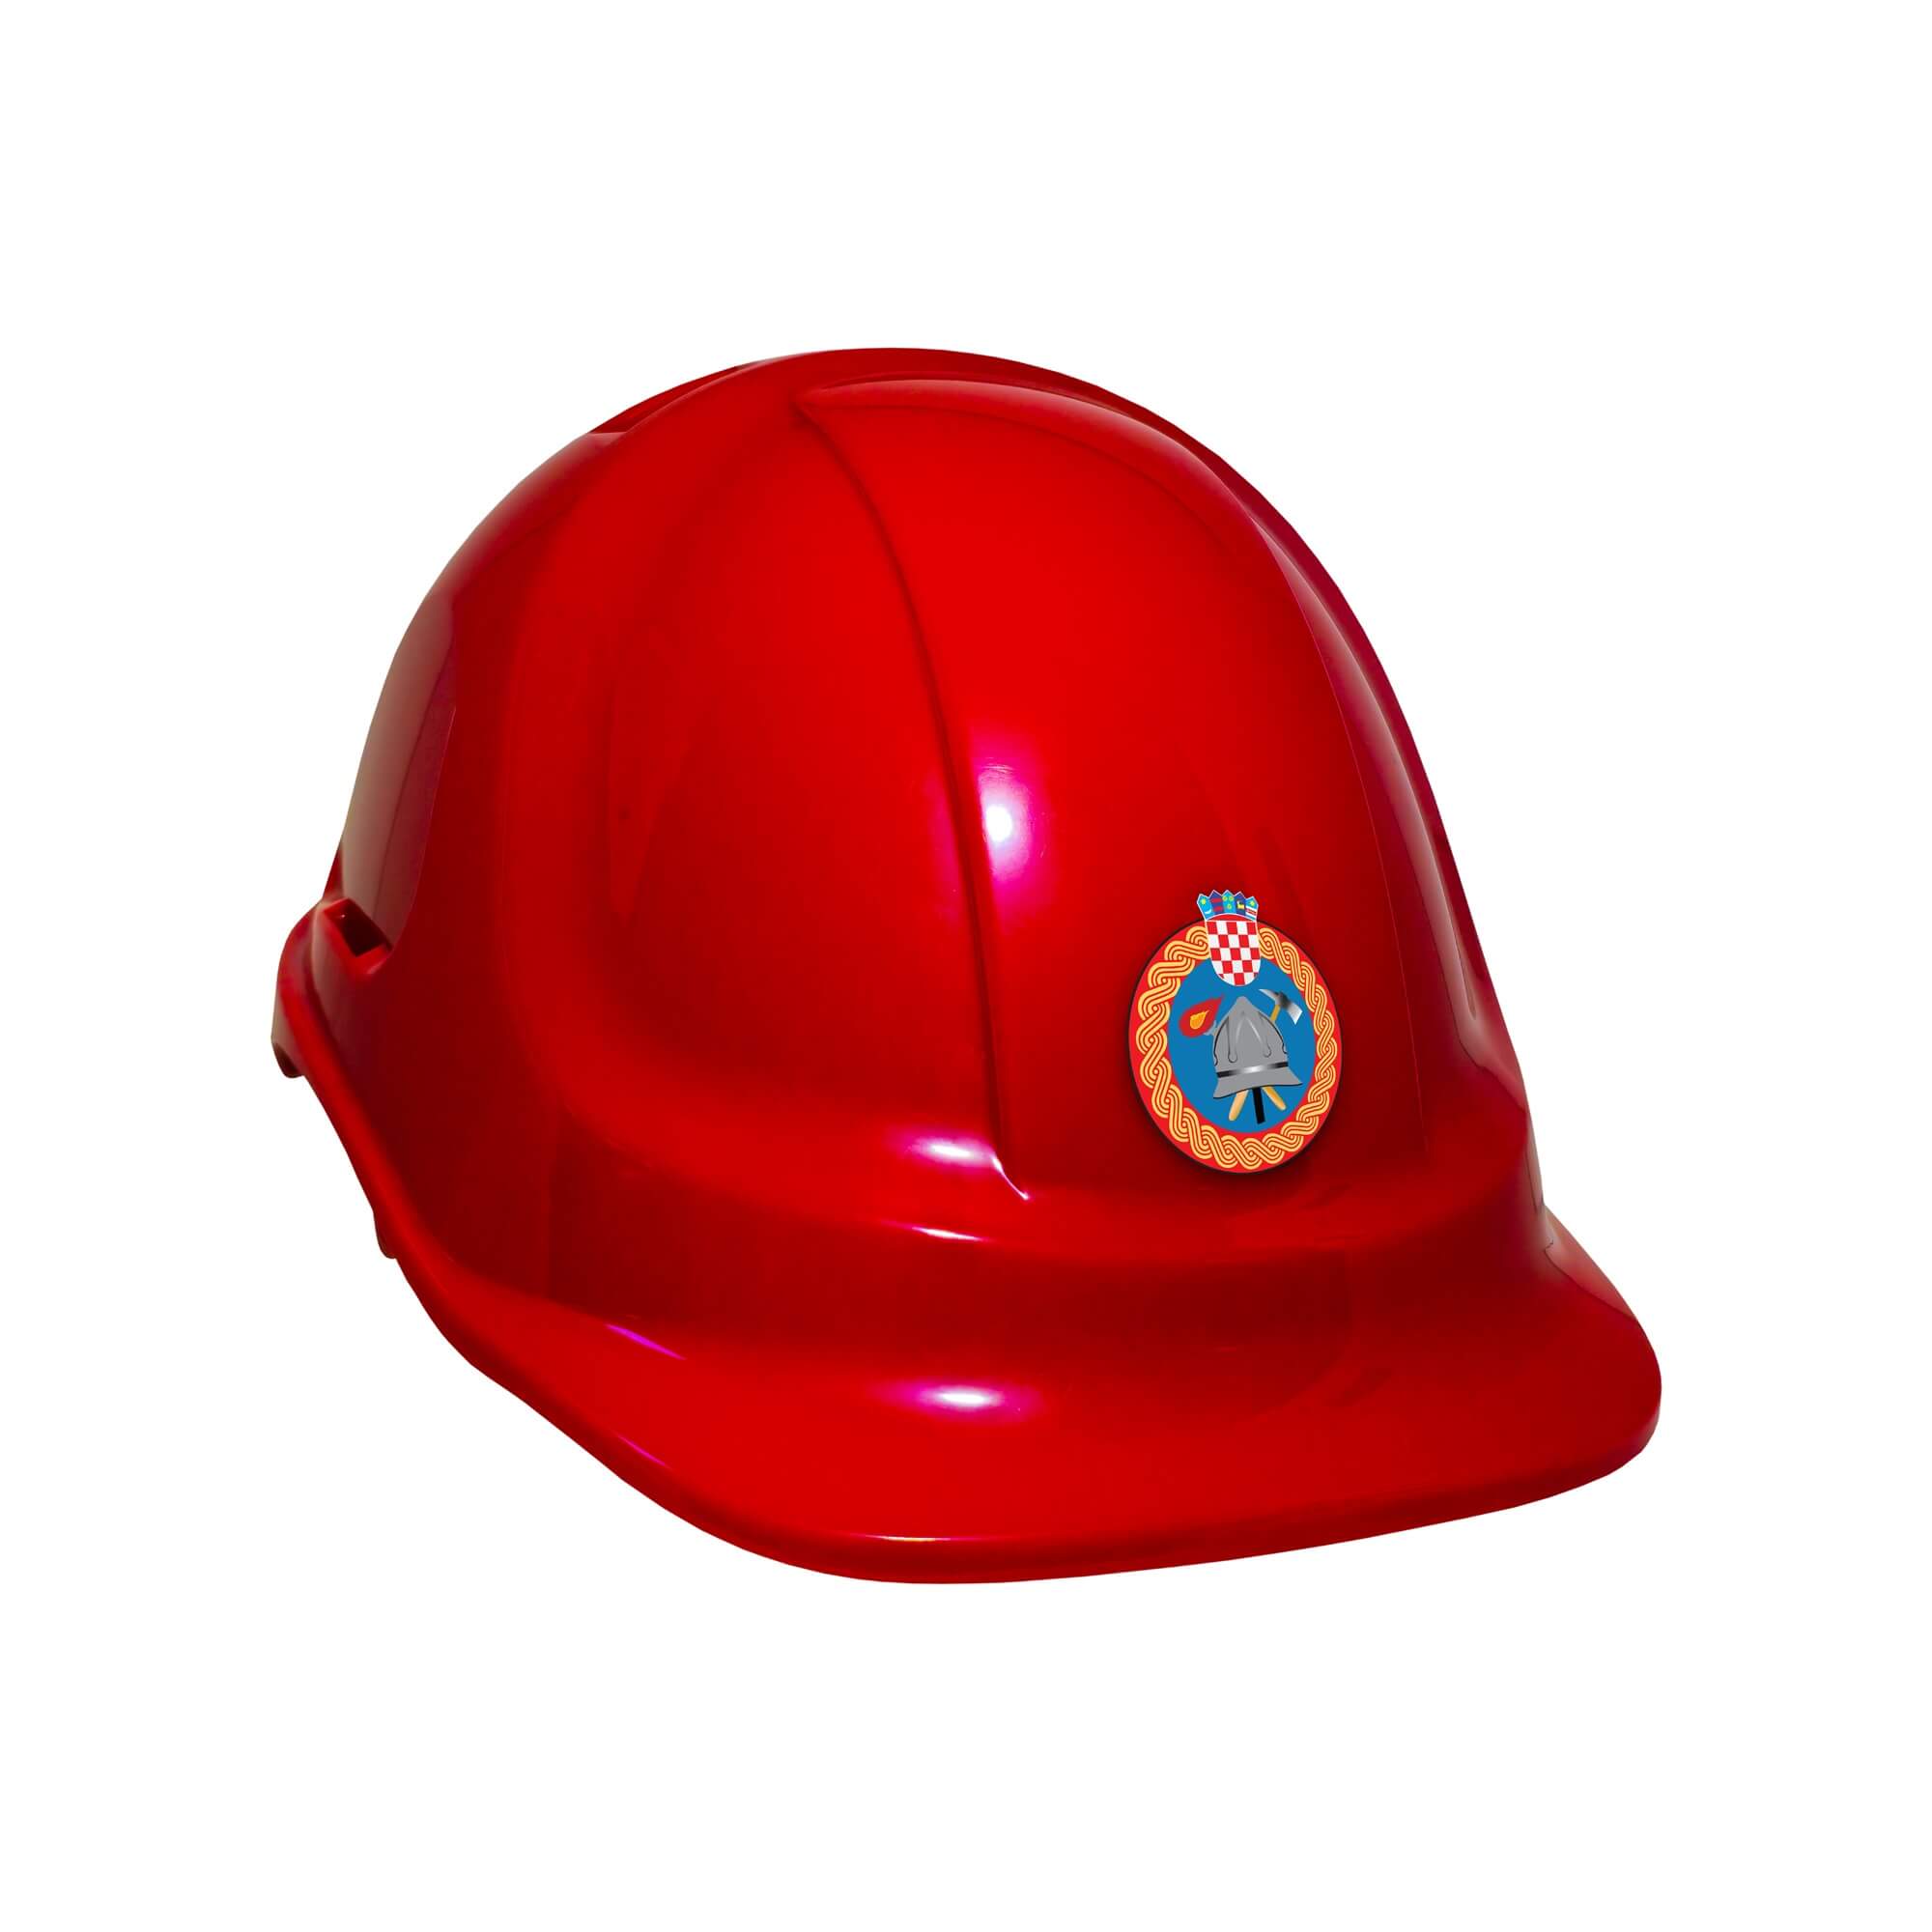 Firefighter Helmet for Kid's